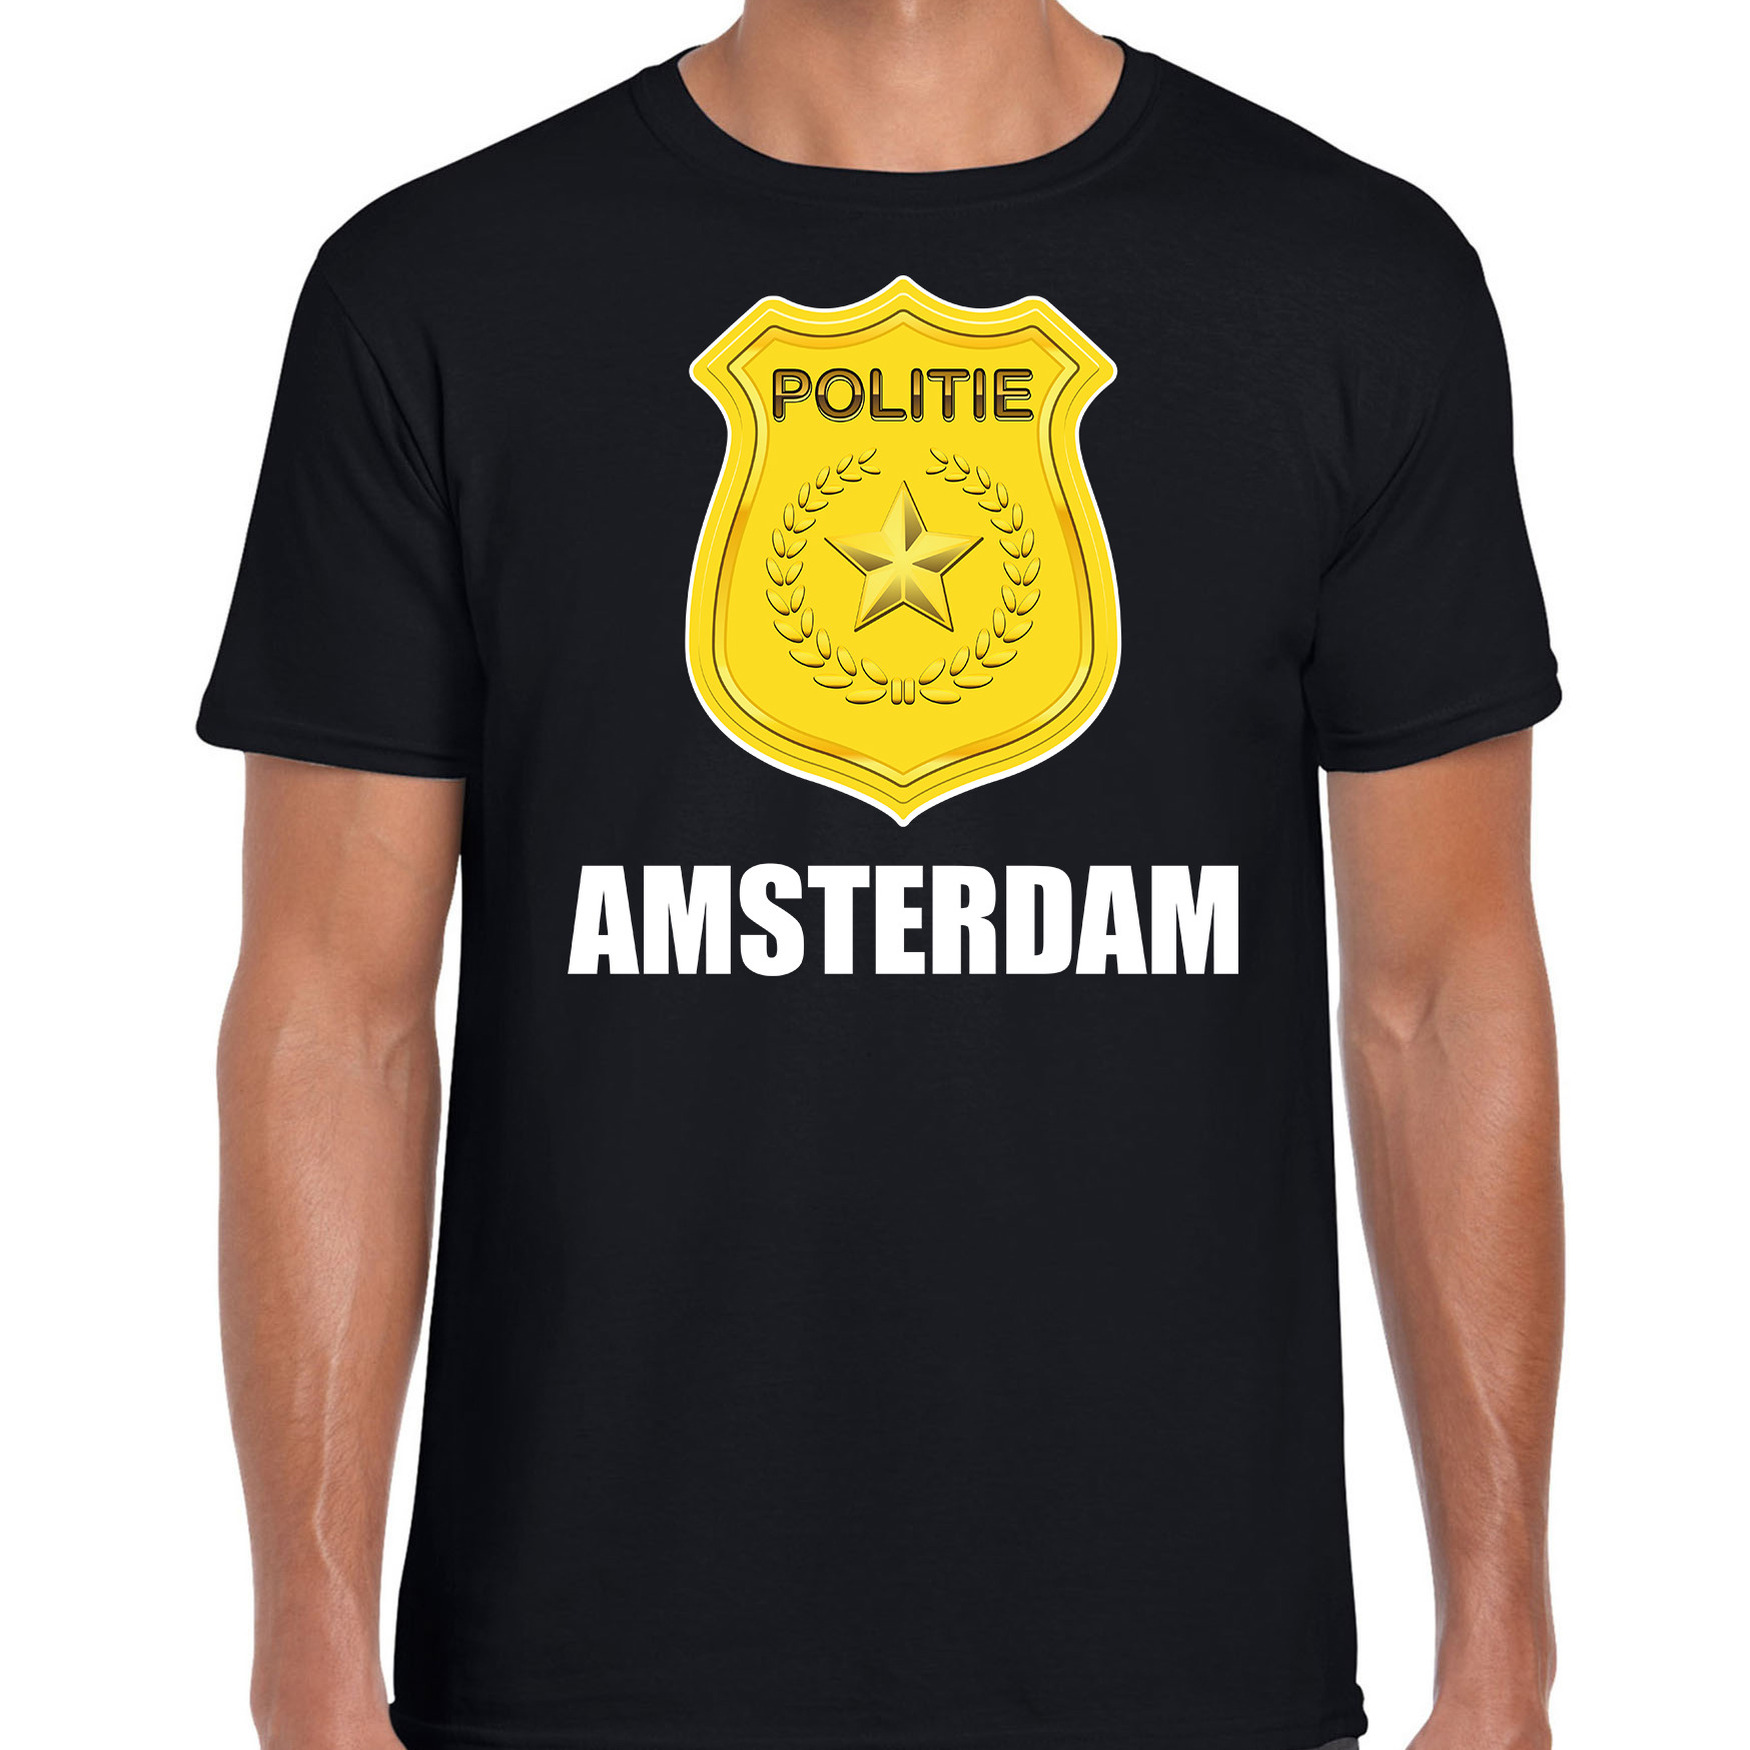 Politie embleem Amsterdam carnaval verkleed t-shirt zwart voor heren